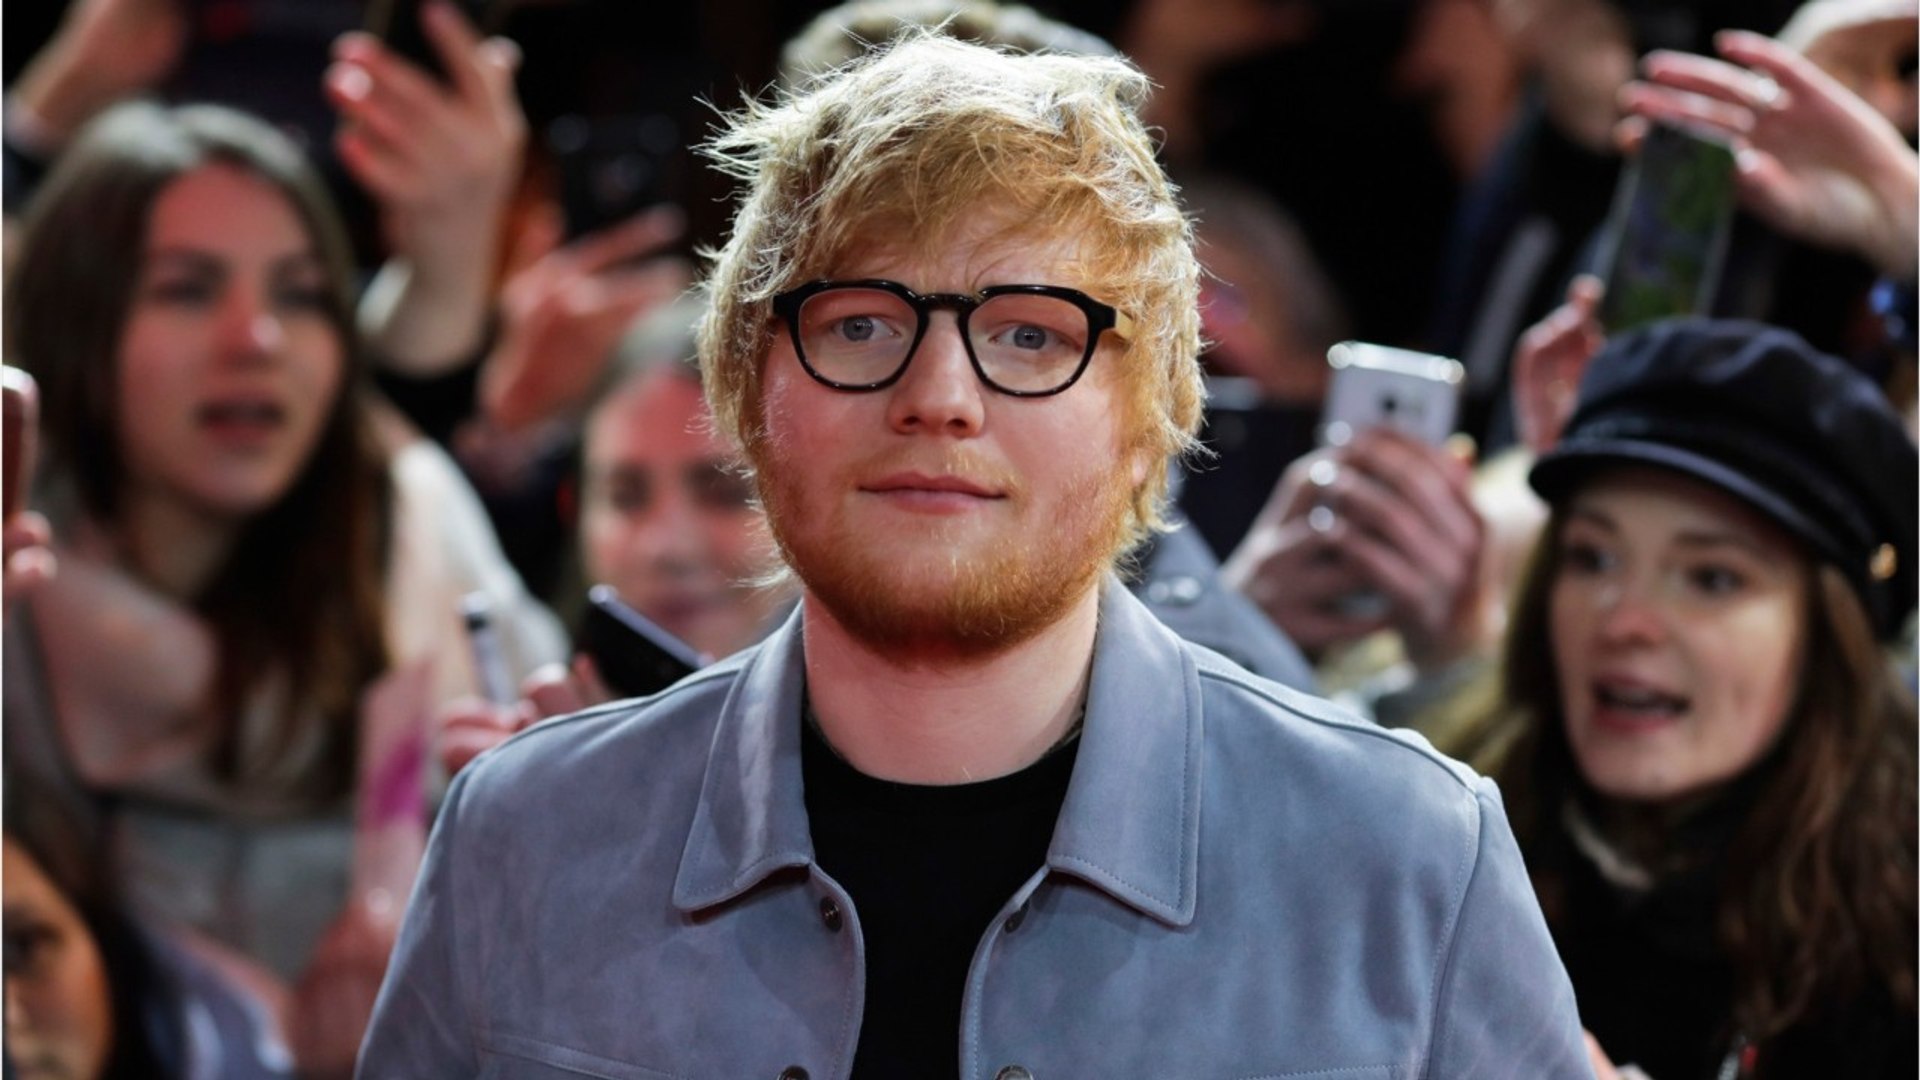 Ed Sheeran, Stormzy Take Home Awards At Britain's Ivor Novello